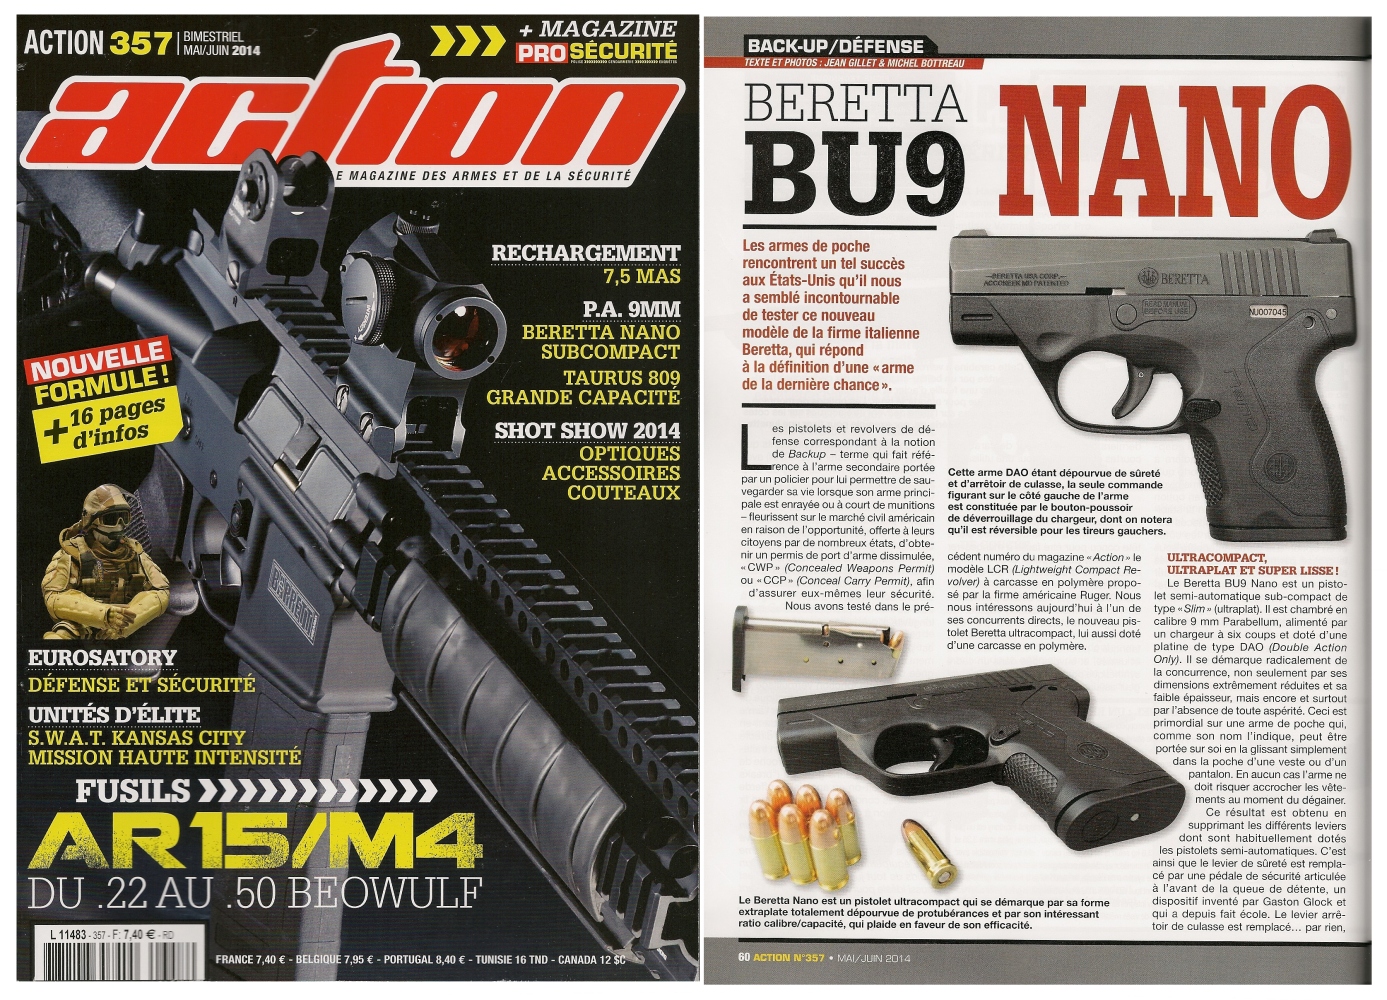 Le banc d’essai du pistolet Beretta BU9 Nano a été publié sur 6 pages dans le magazine Action n°357 (mai-juin 2014)